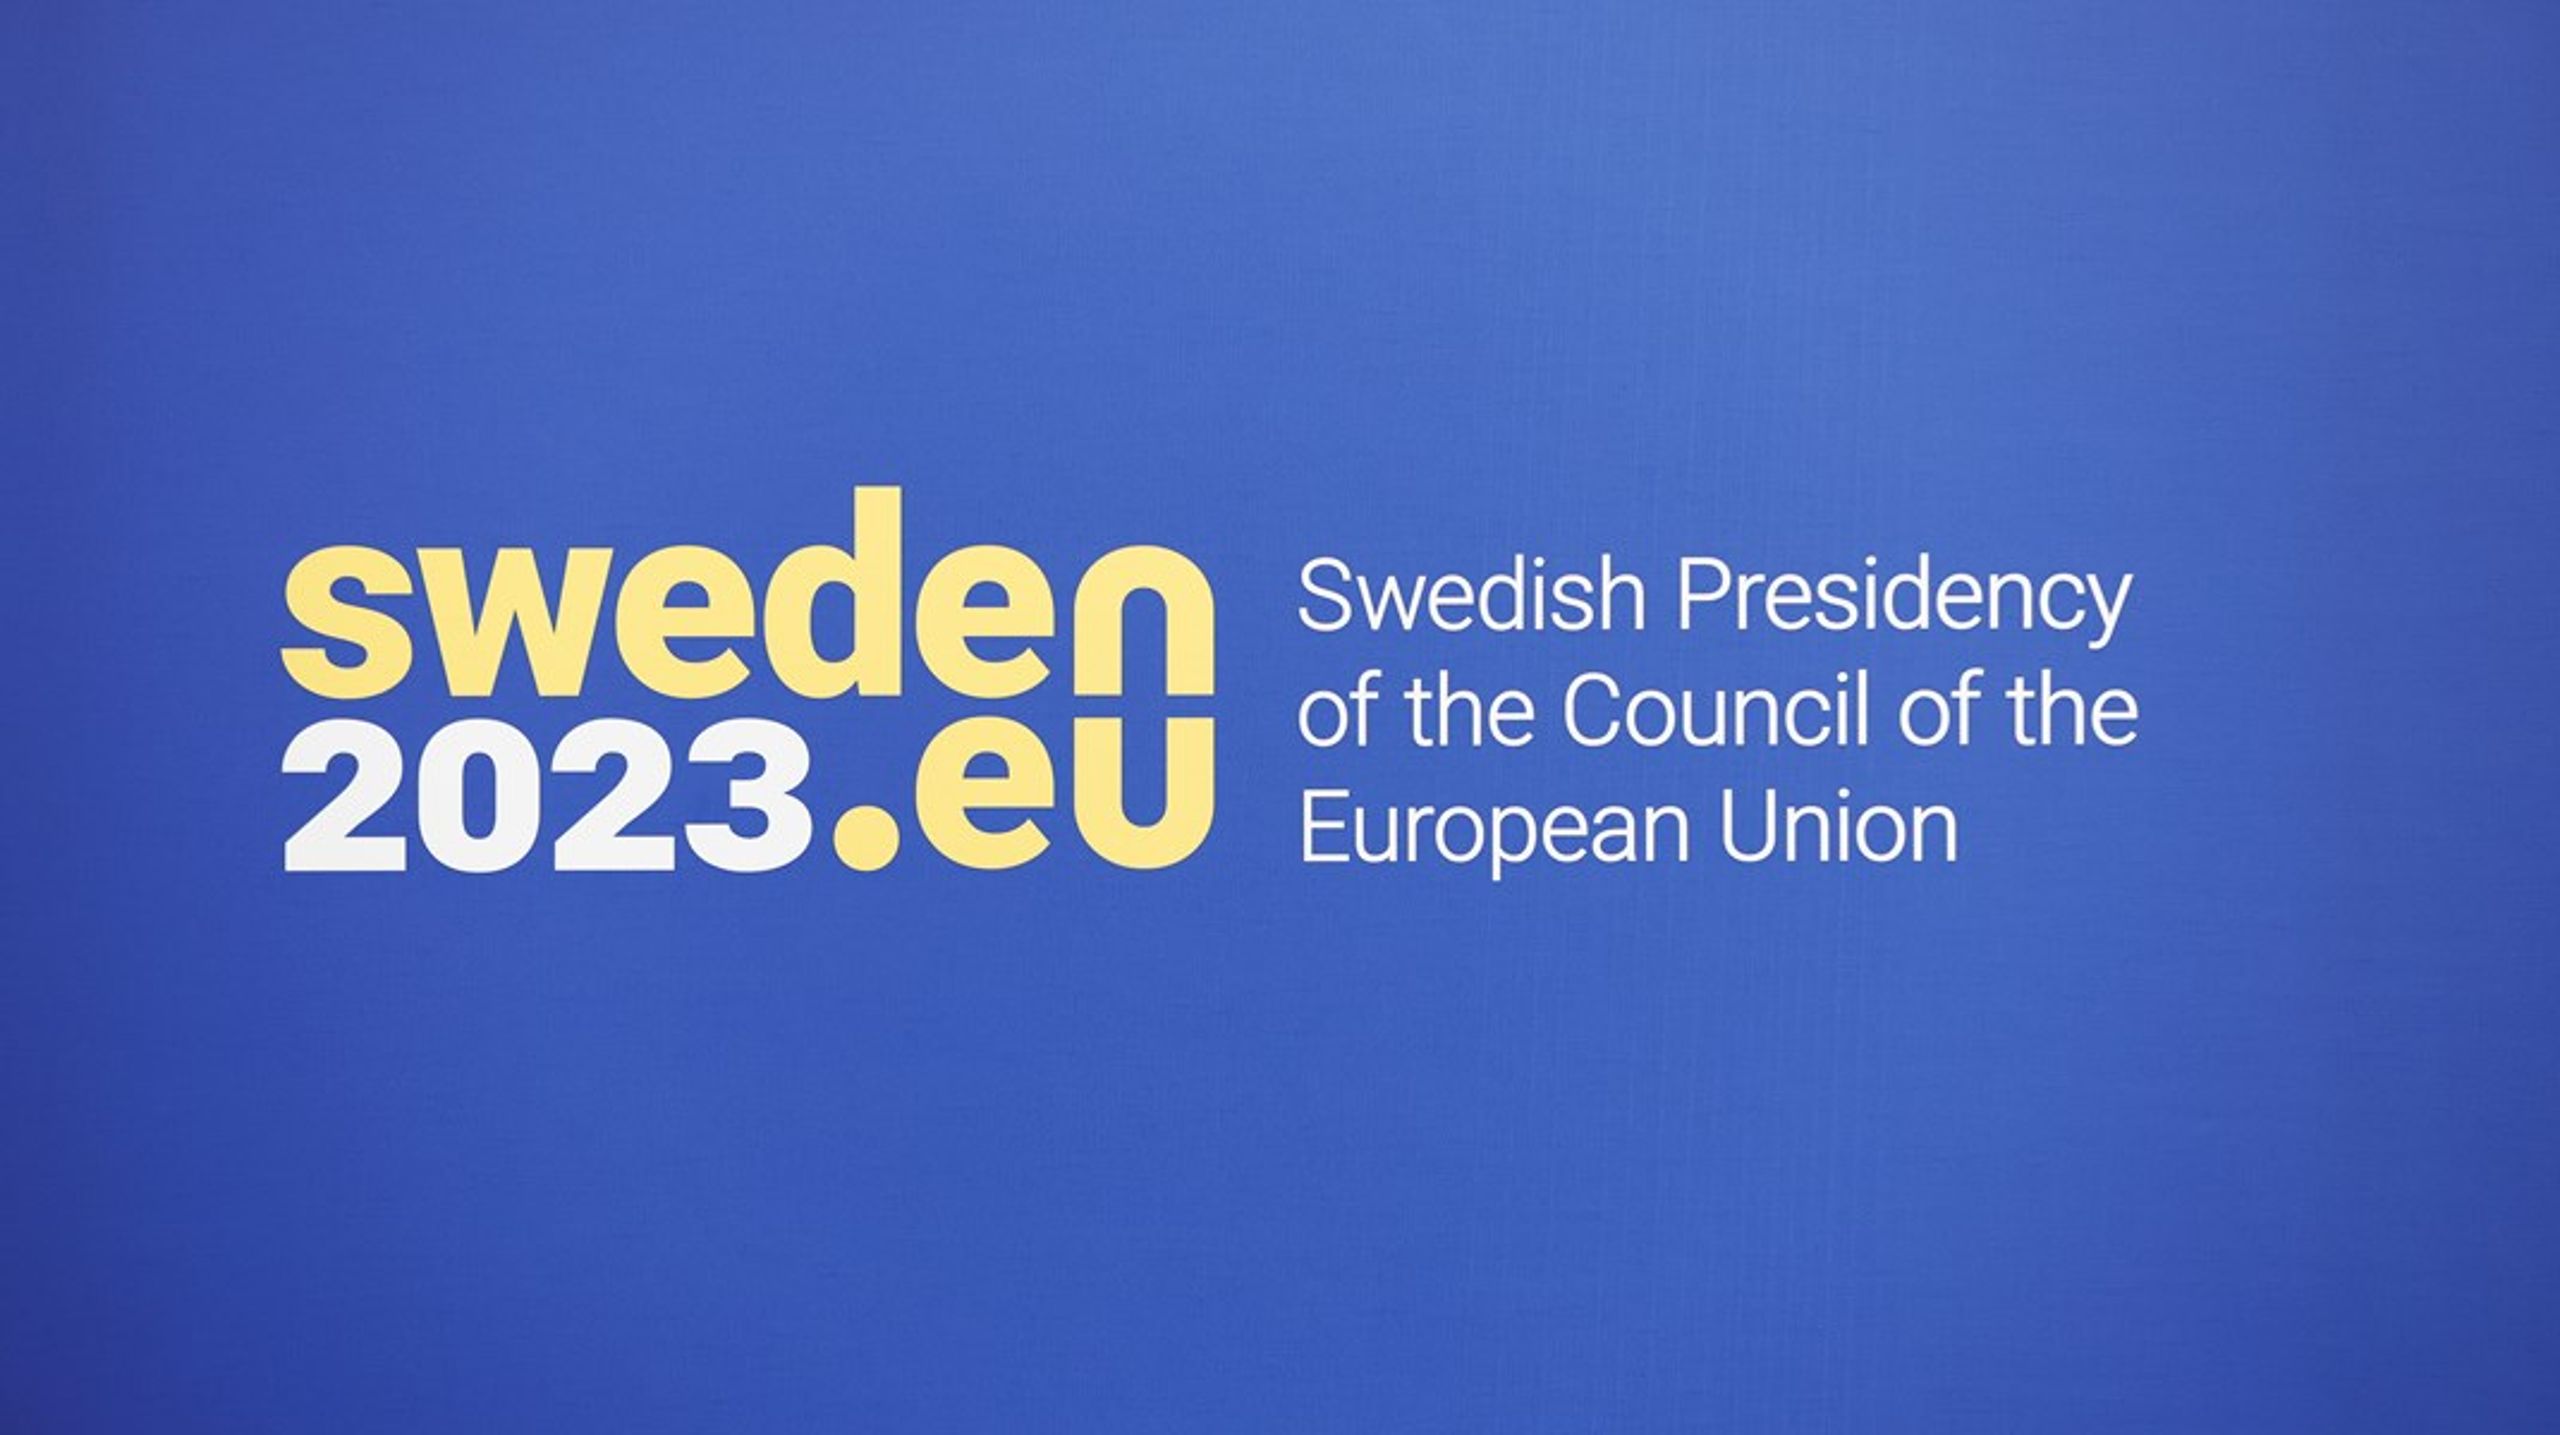 Vi är oroade över att Sveriges ordförandeskap i EU:s ministerråd tar alla resurser i anspråk så att viktiga och tidskritiska åtgärder inte kan omhändertas så skyndsamt som är önskvärt, skriver debattörerna.